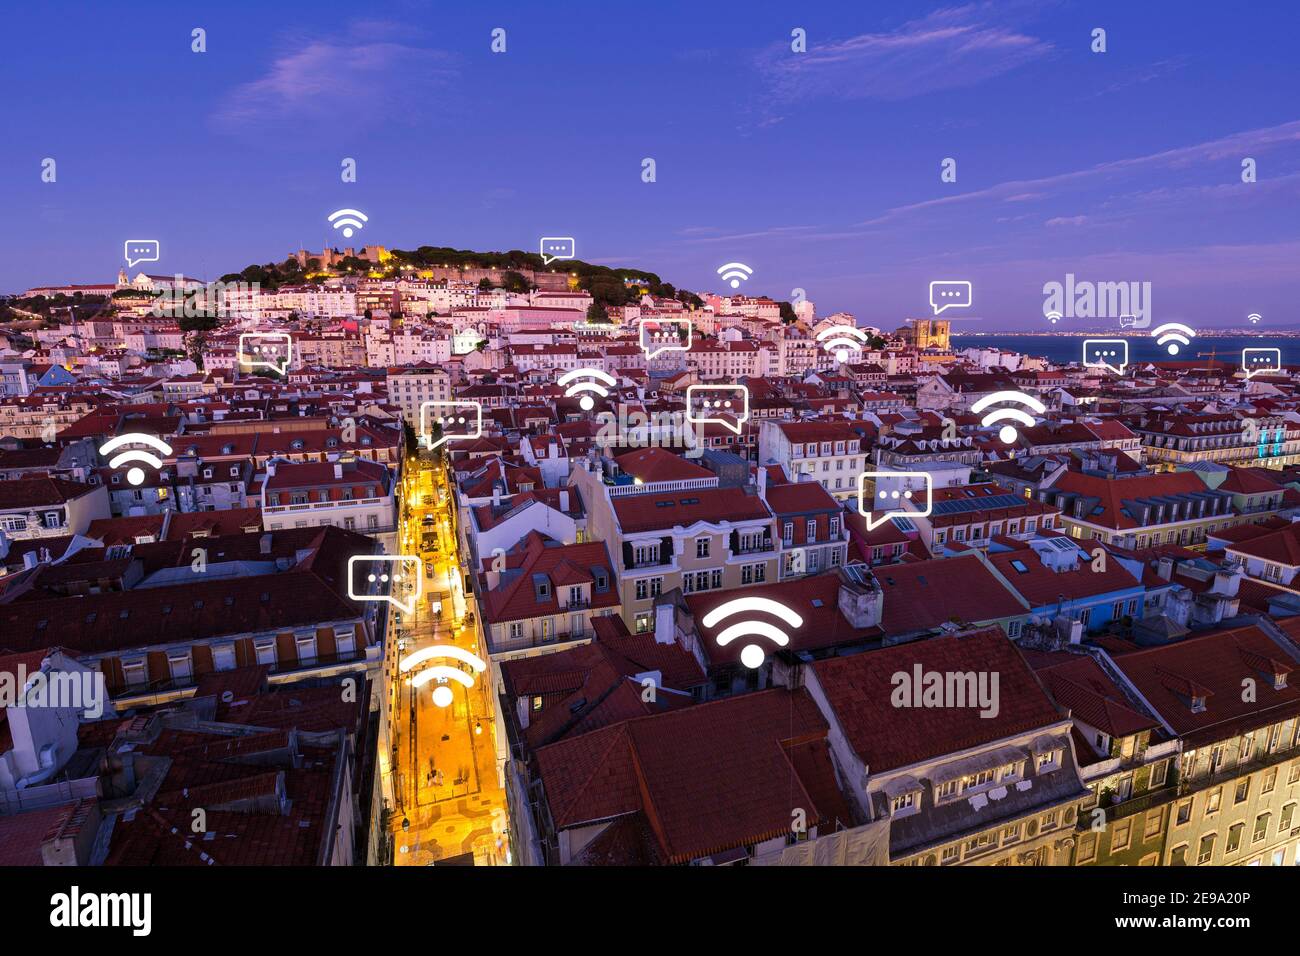 Vue sur le centre-ville de Lisbonne, Portugal, depuis le haut au crépuscule. Concept de connexion réseau sans fil, Wi-Fi, ville intelligente et messagerie en ligne. Banque D'Images